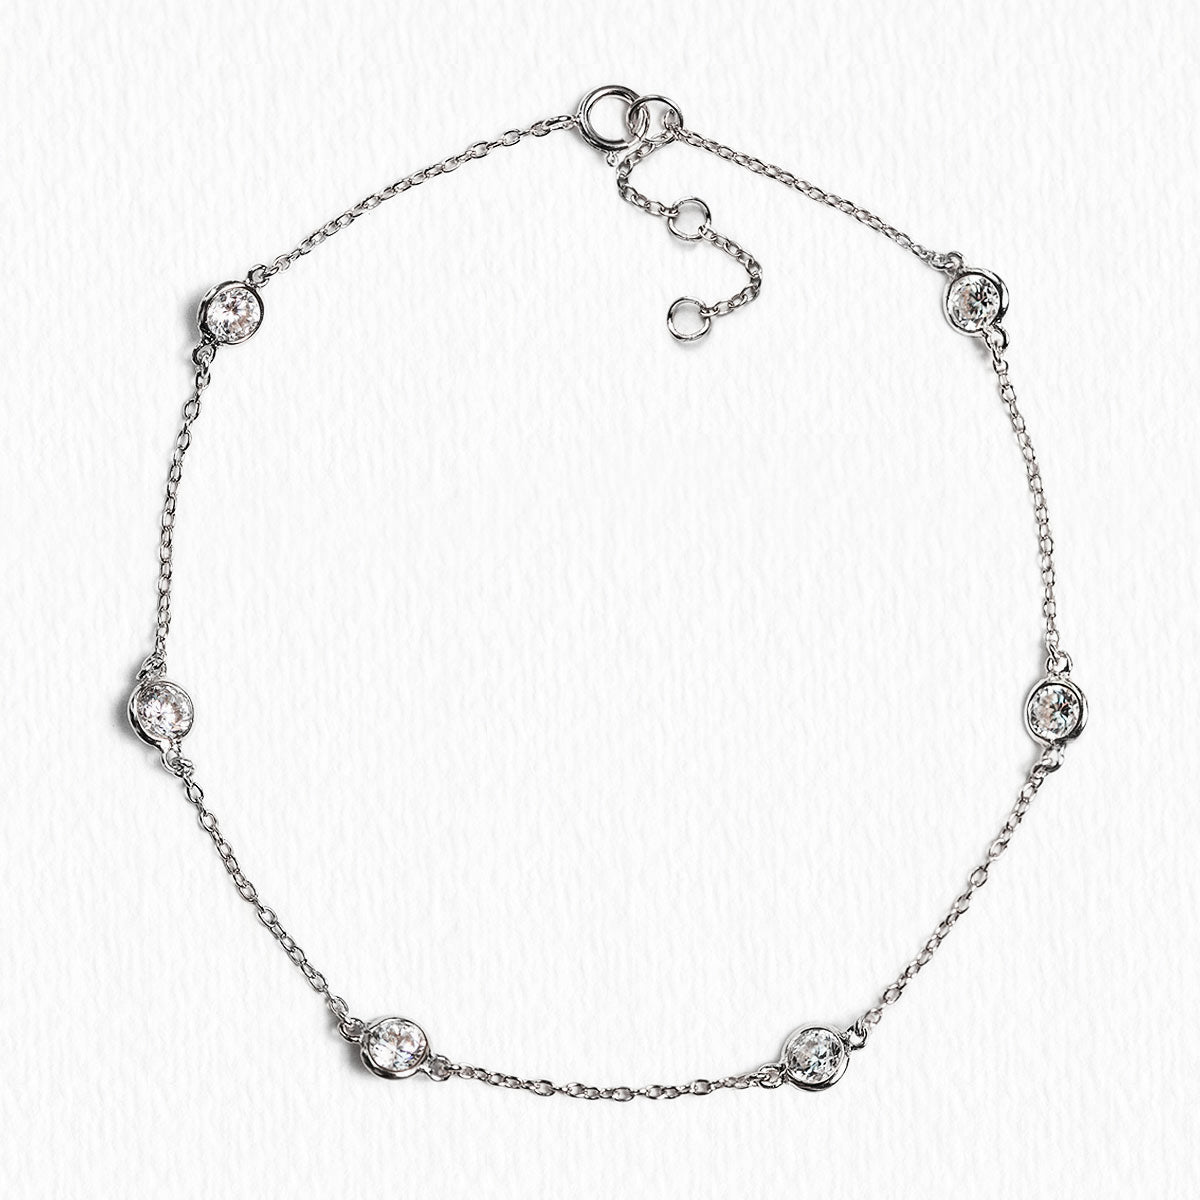 Moonstone Bracelet for Women | Lina Snara